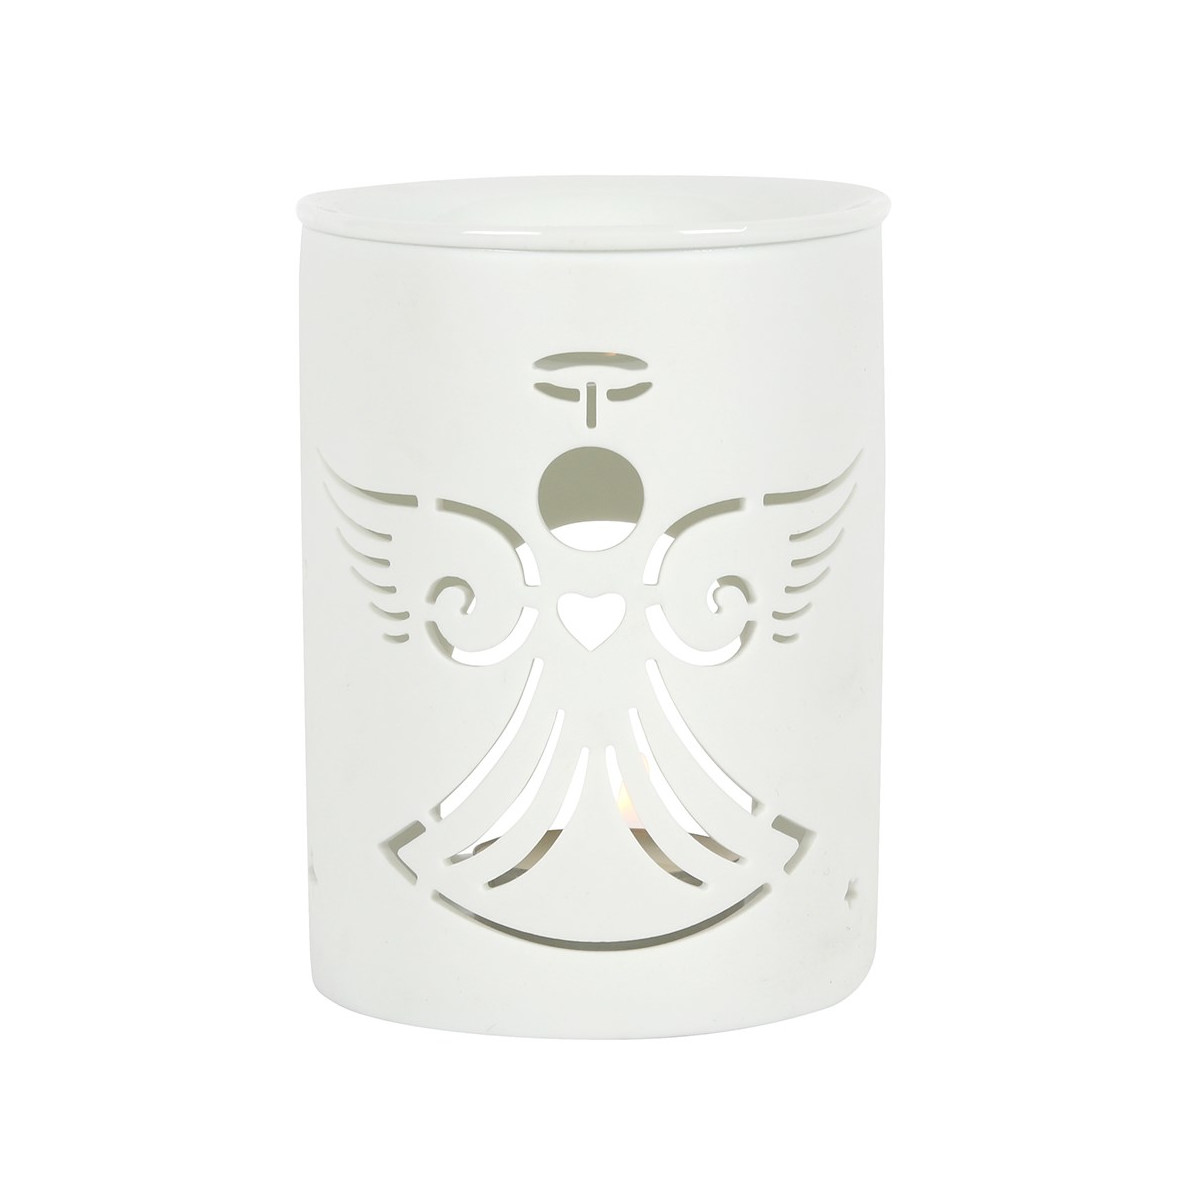 Matt-Weiße Keramik Duftlampe weißer Engel